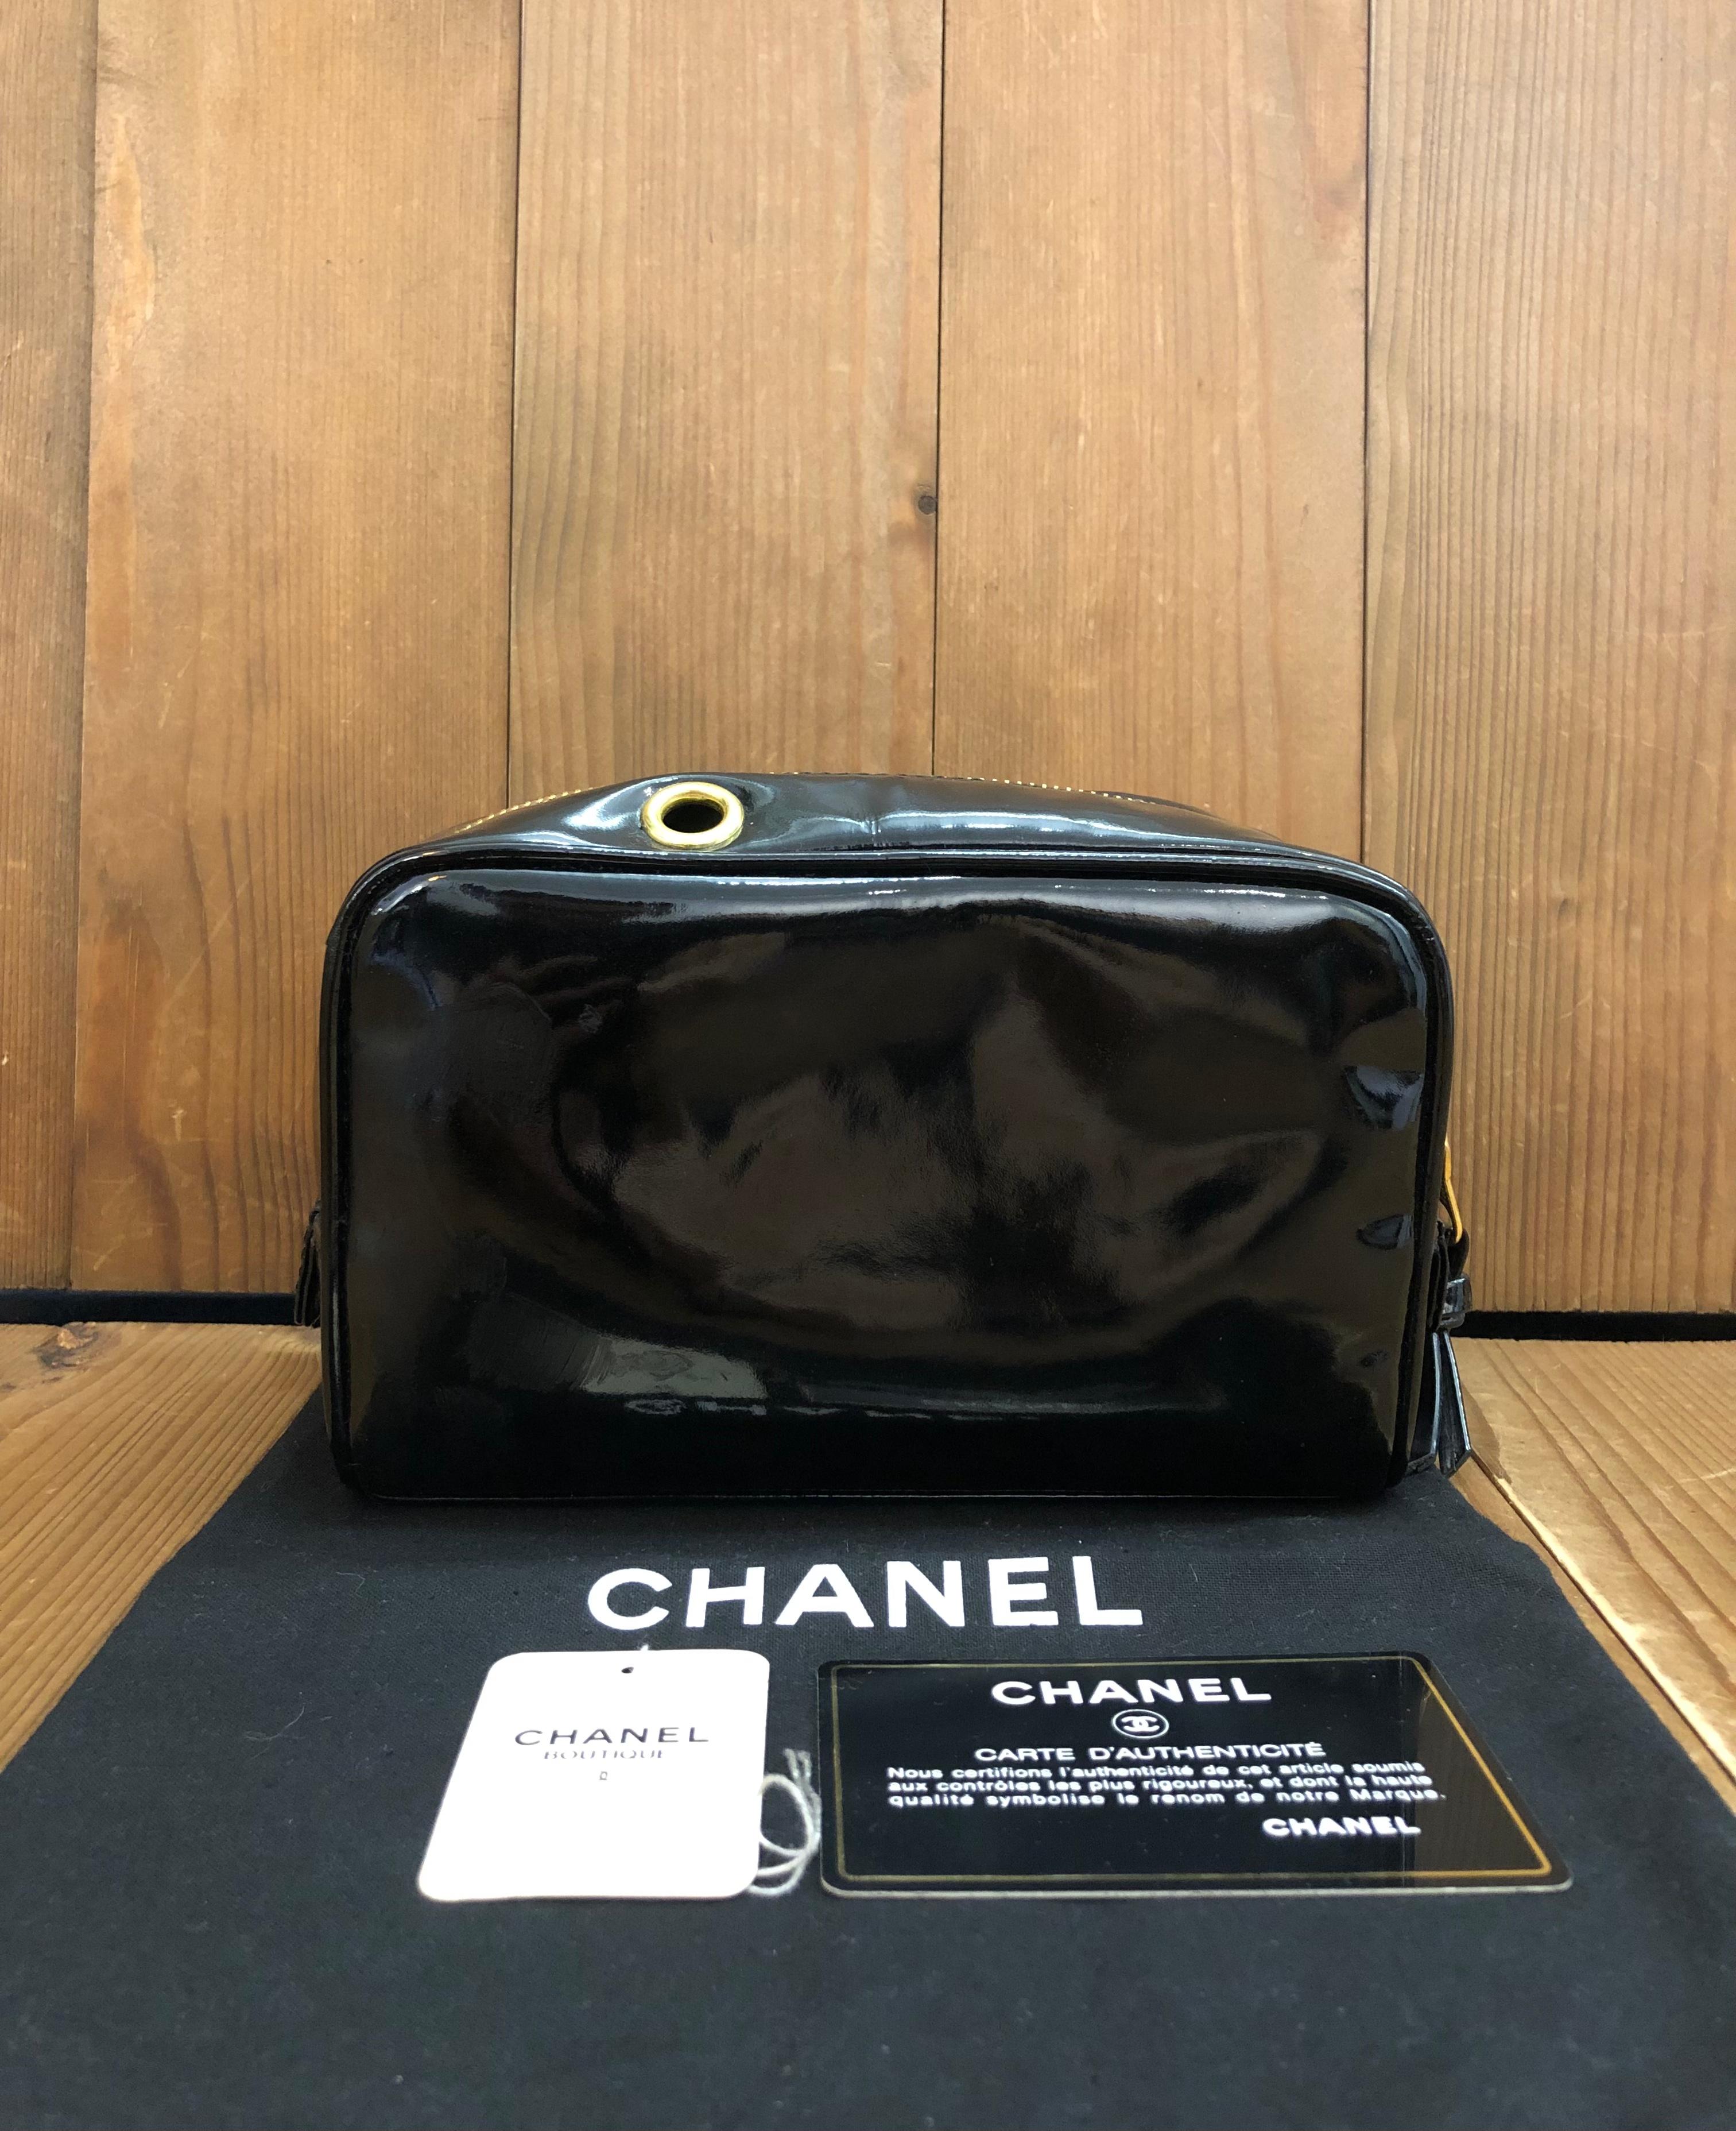 Diese Vintage CHANEL Kosmetiktasche Clutch Bag ist aus schwarzem Lackleder gefertigt und mit goldfarbener Hardware versehen. Der Reißverschluss an der Oberseite führt zu einem Innenraum aus Lammfell in Schwarz mit zwei Reißverschlusstaschen.